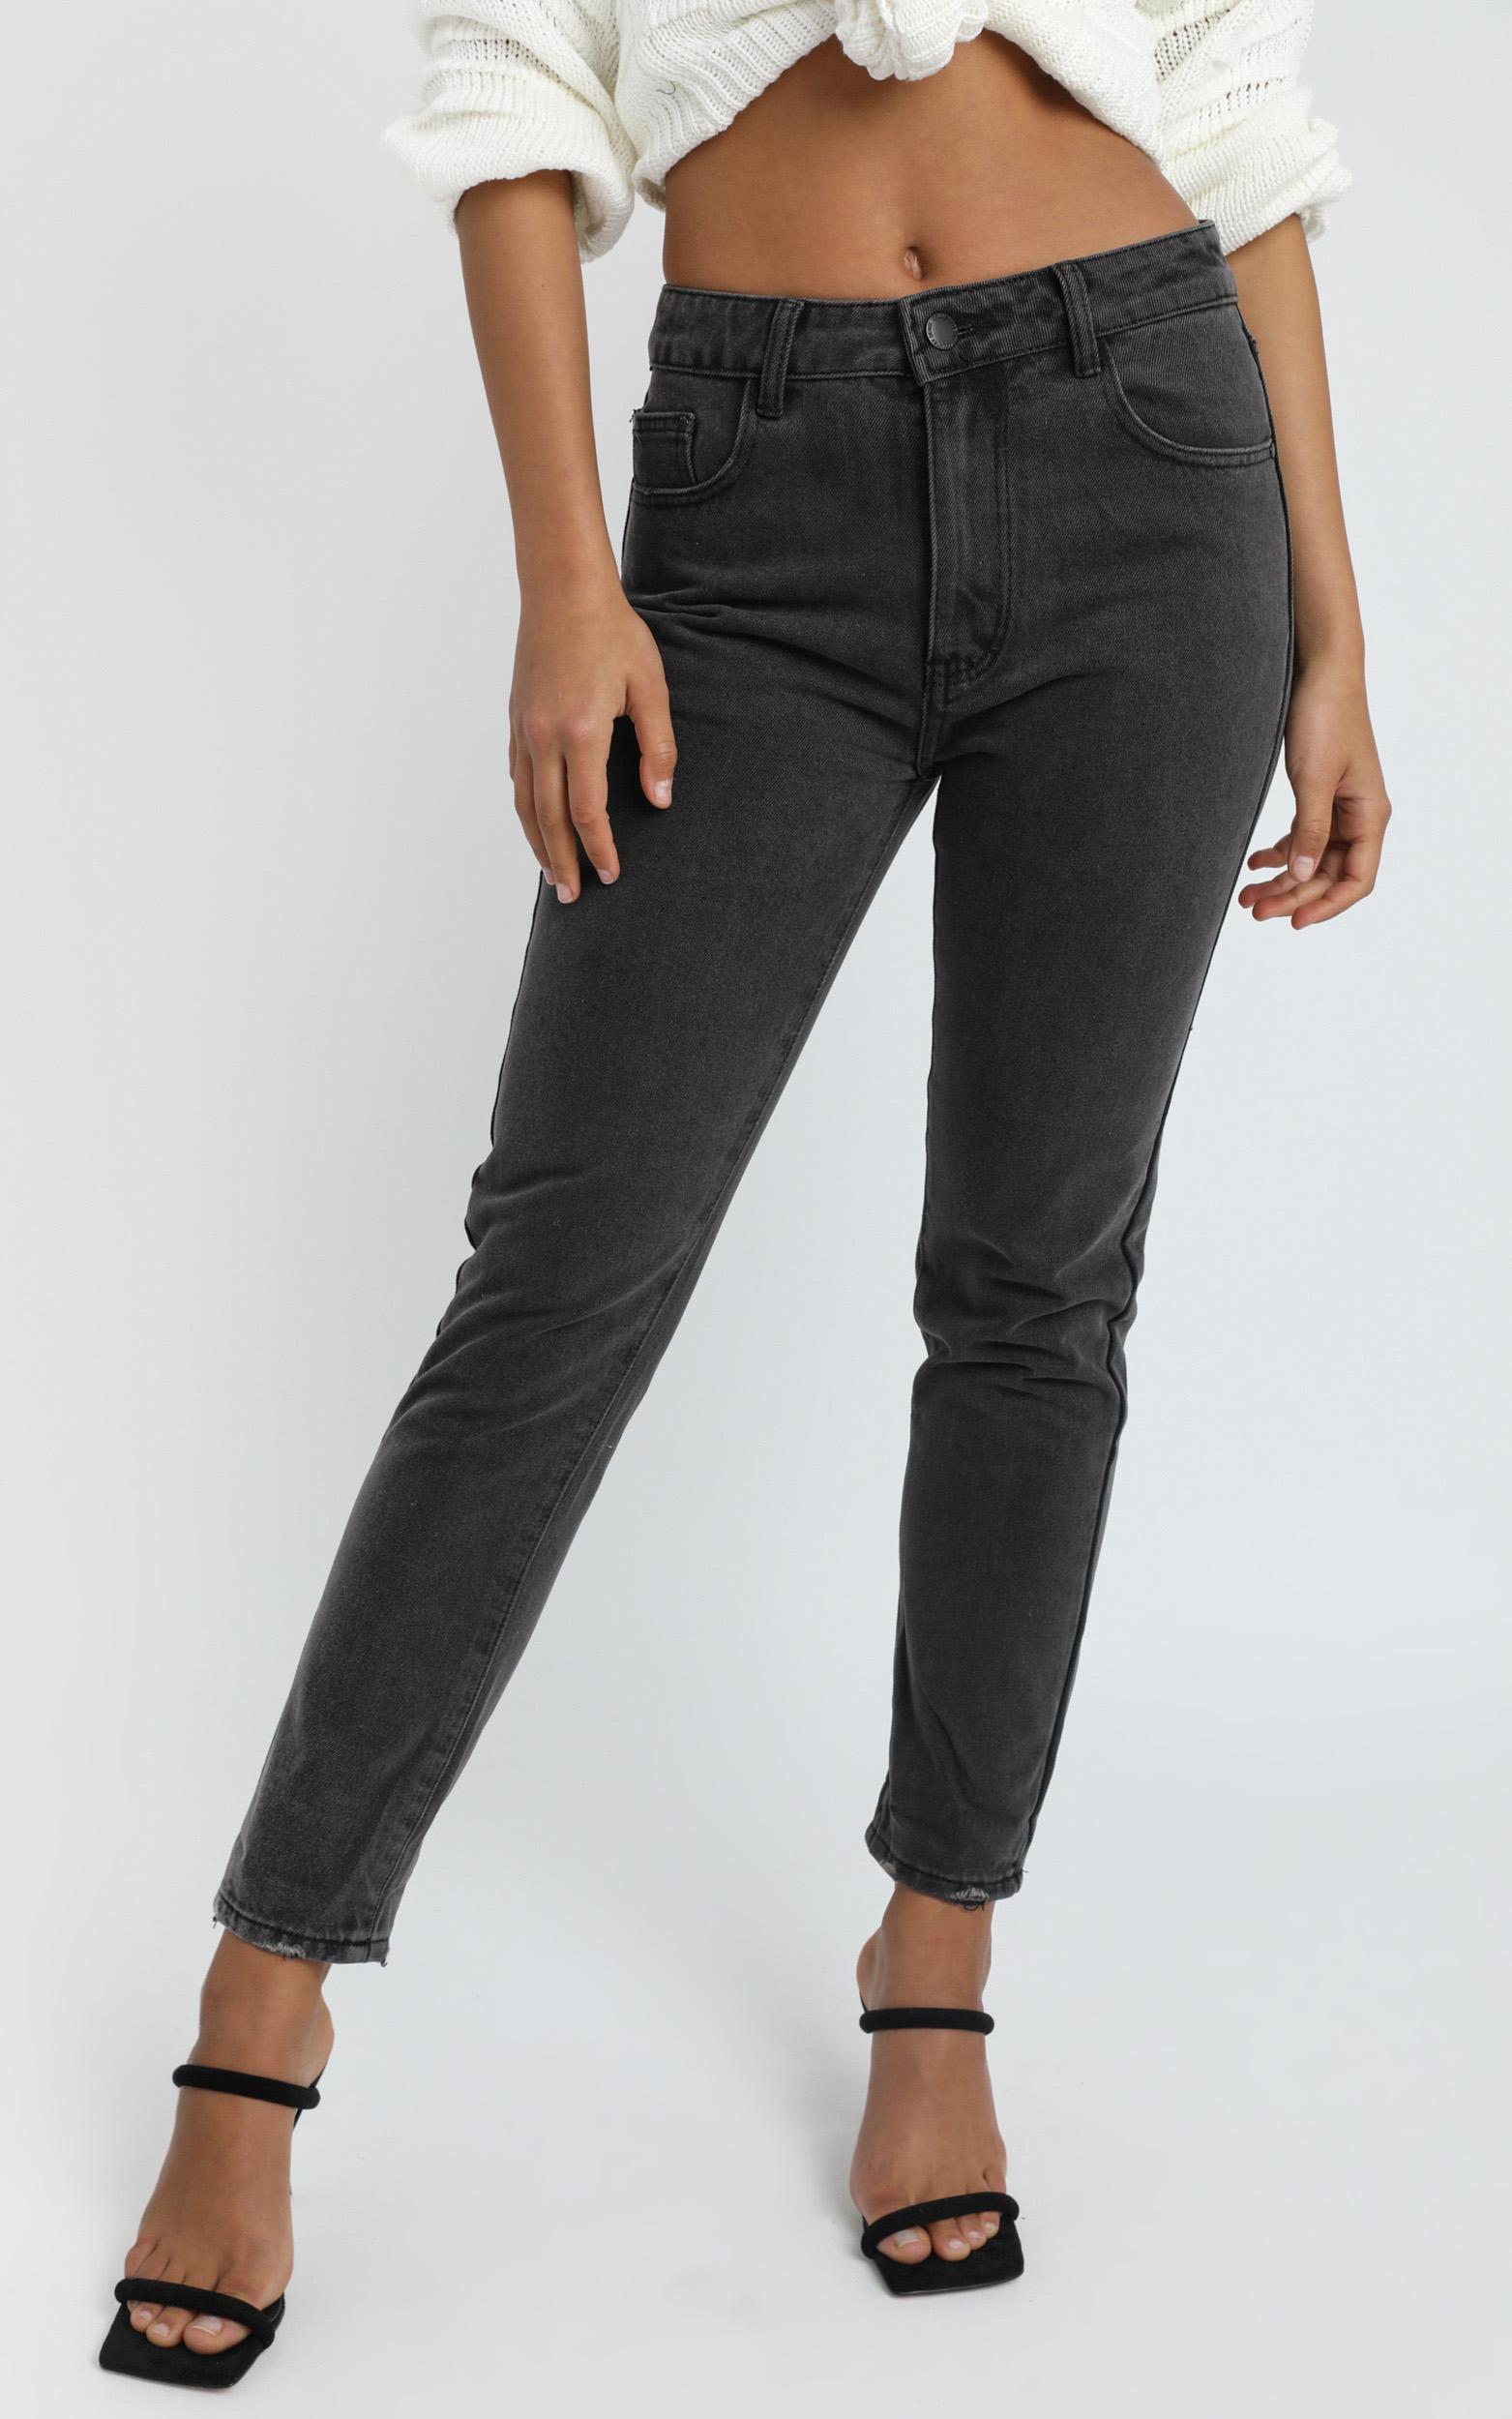 Remy Jeans in washed black denim - 14 (XL), Black, hi-res image number null